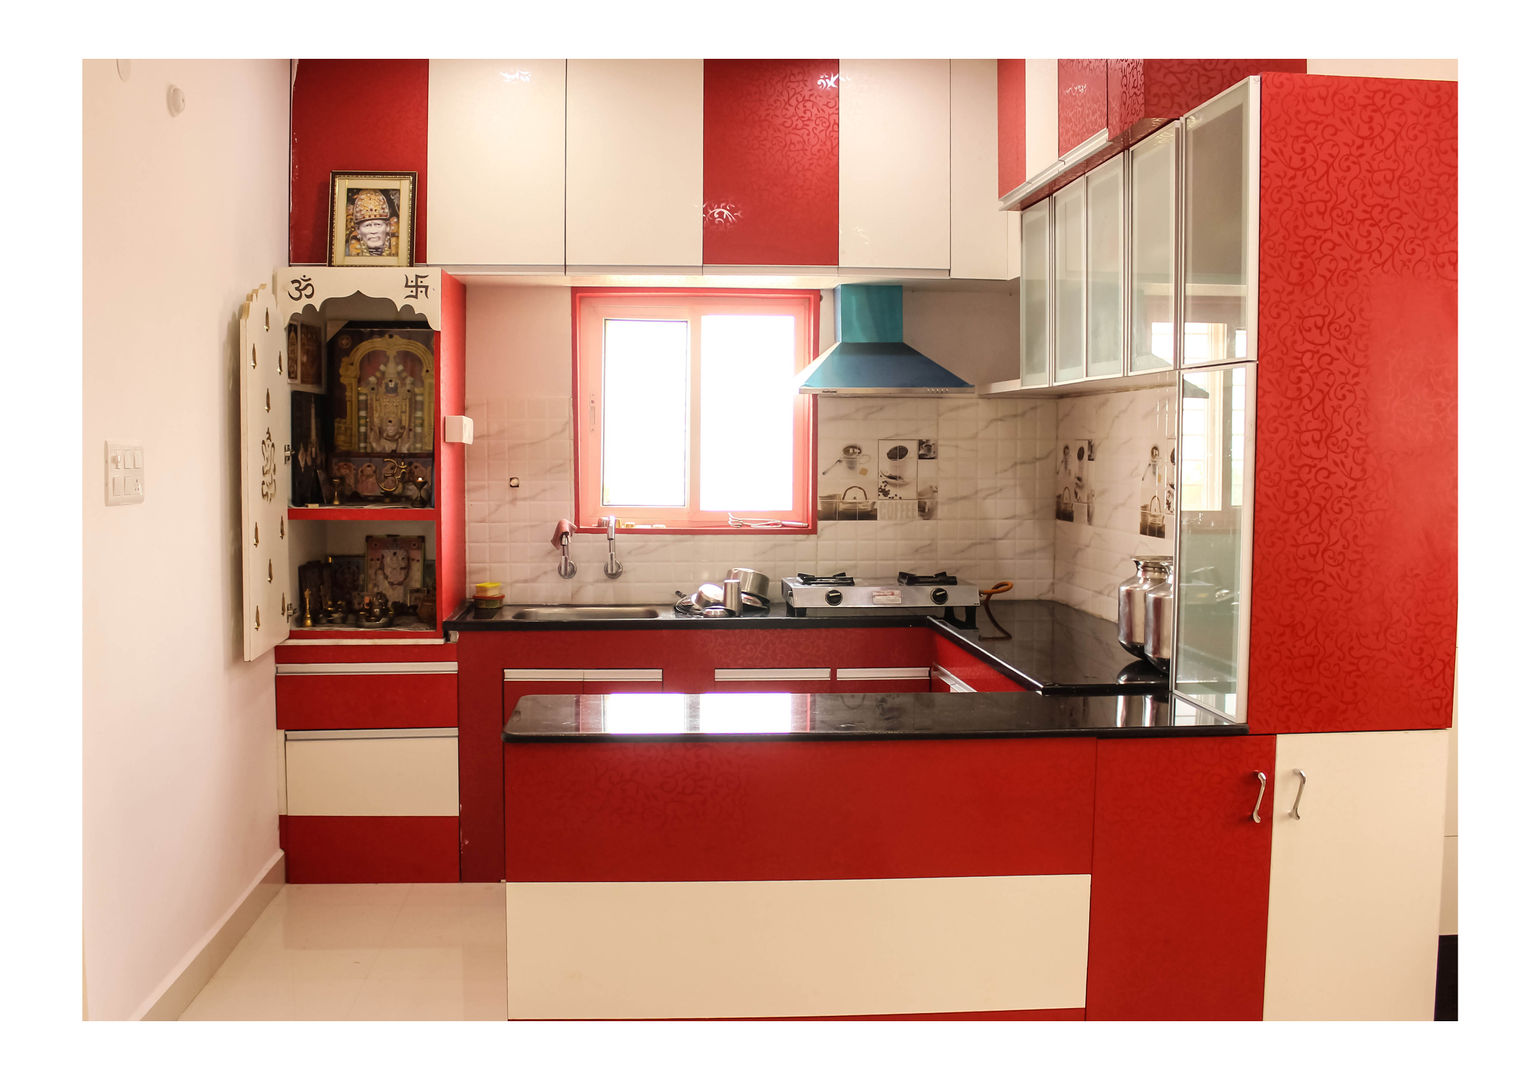 2 Bedroom Flat at Manikonda, Happy Homes Designers Happy Homes Designers 모던스타일 주방 캐비닛 & 선반